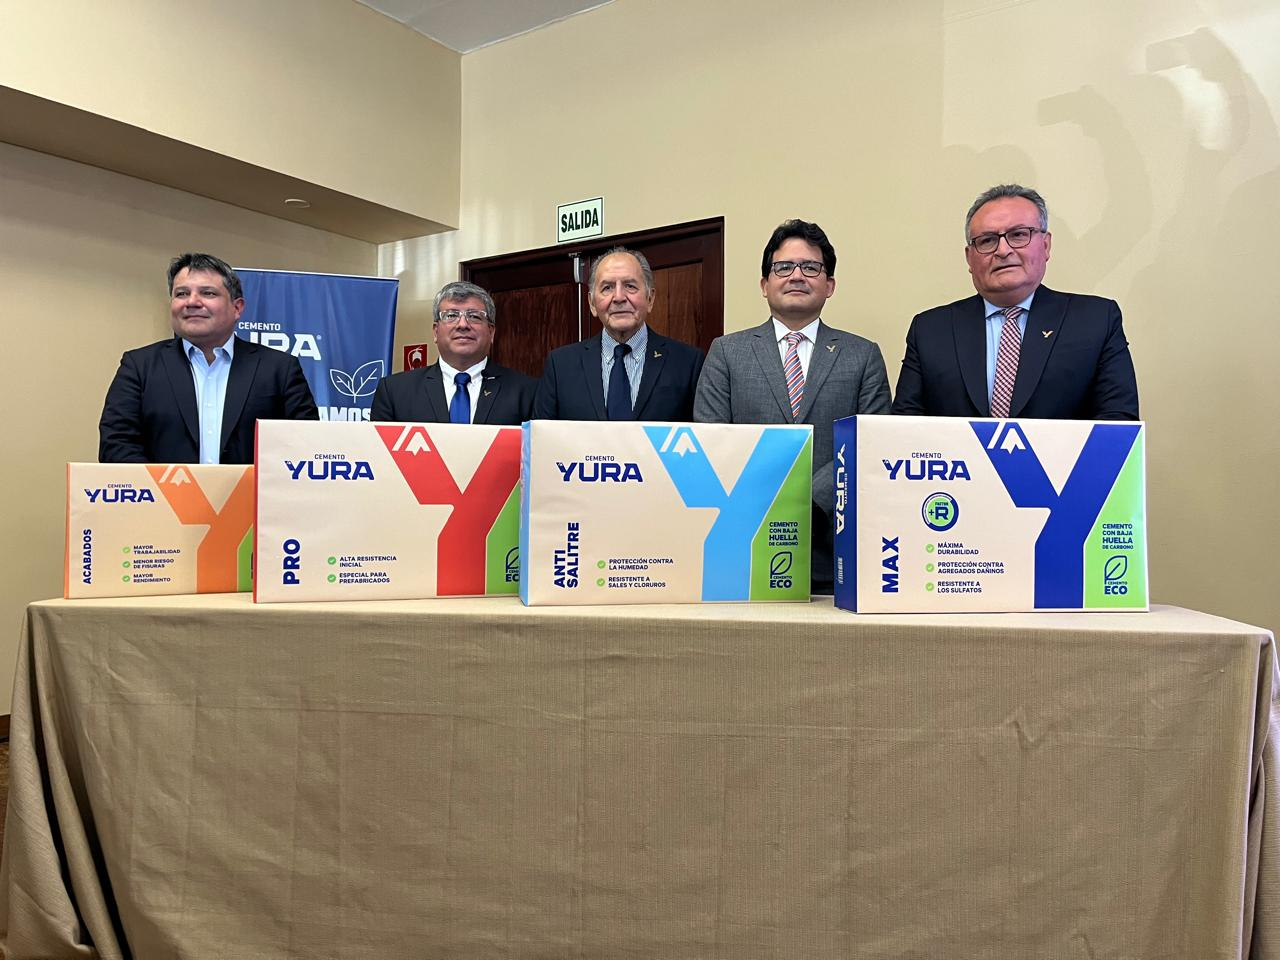 
                                 Yura: primera cementera peruana en transformar su portafolio en beneficio del medio ambiente 
                            